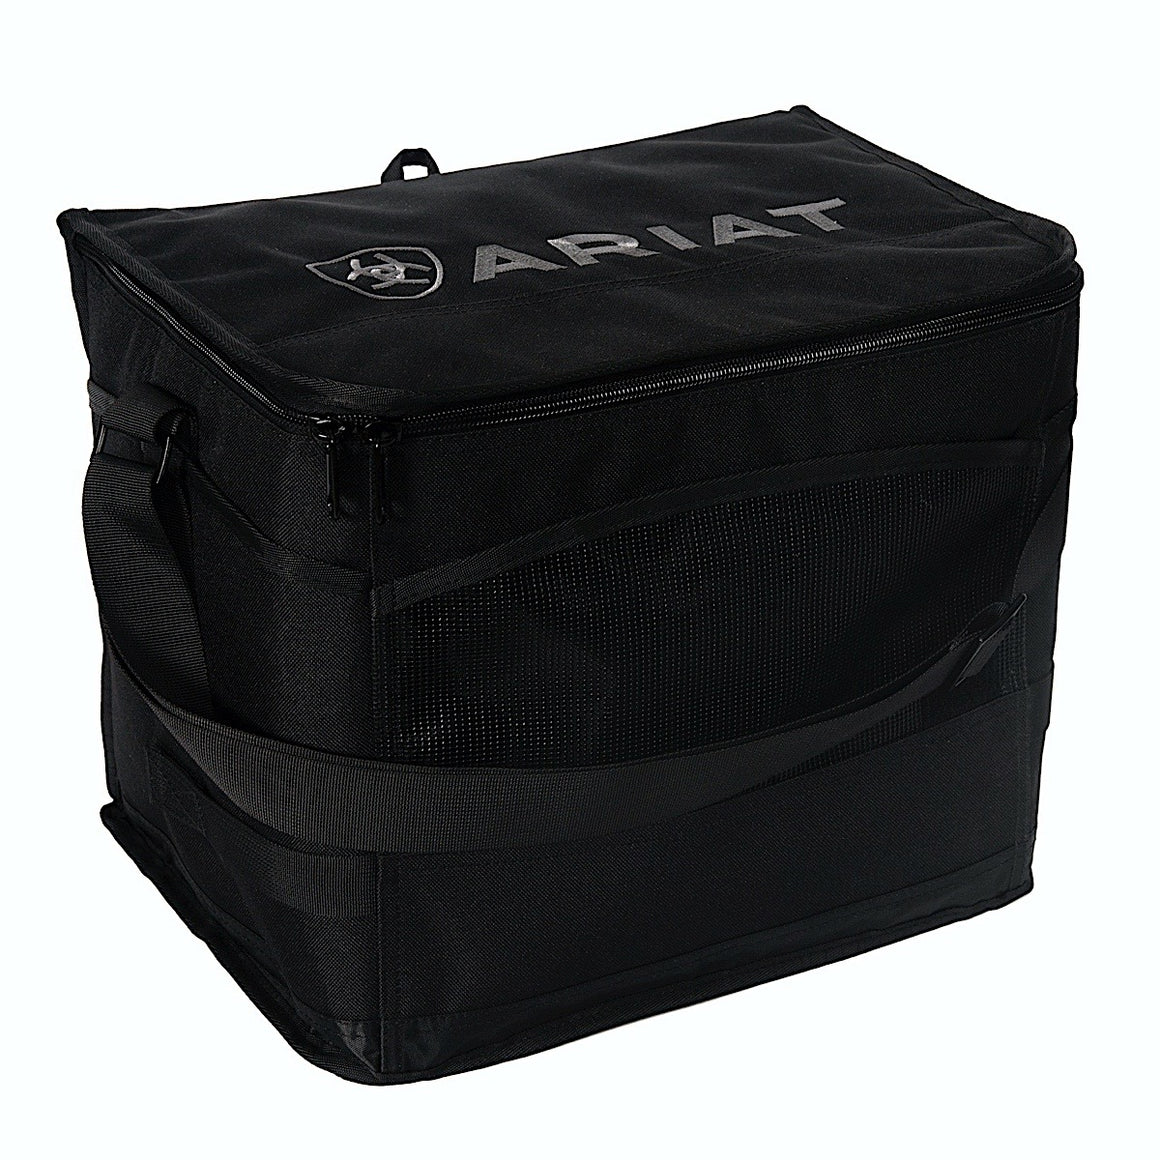 Ariat Cooler Bag Black